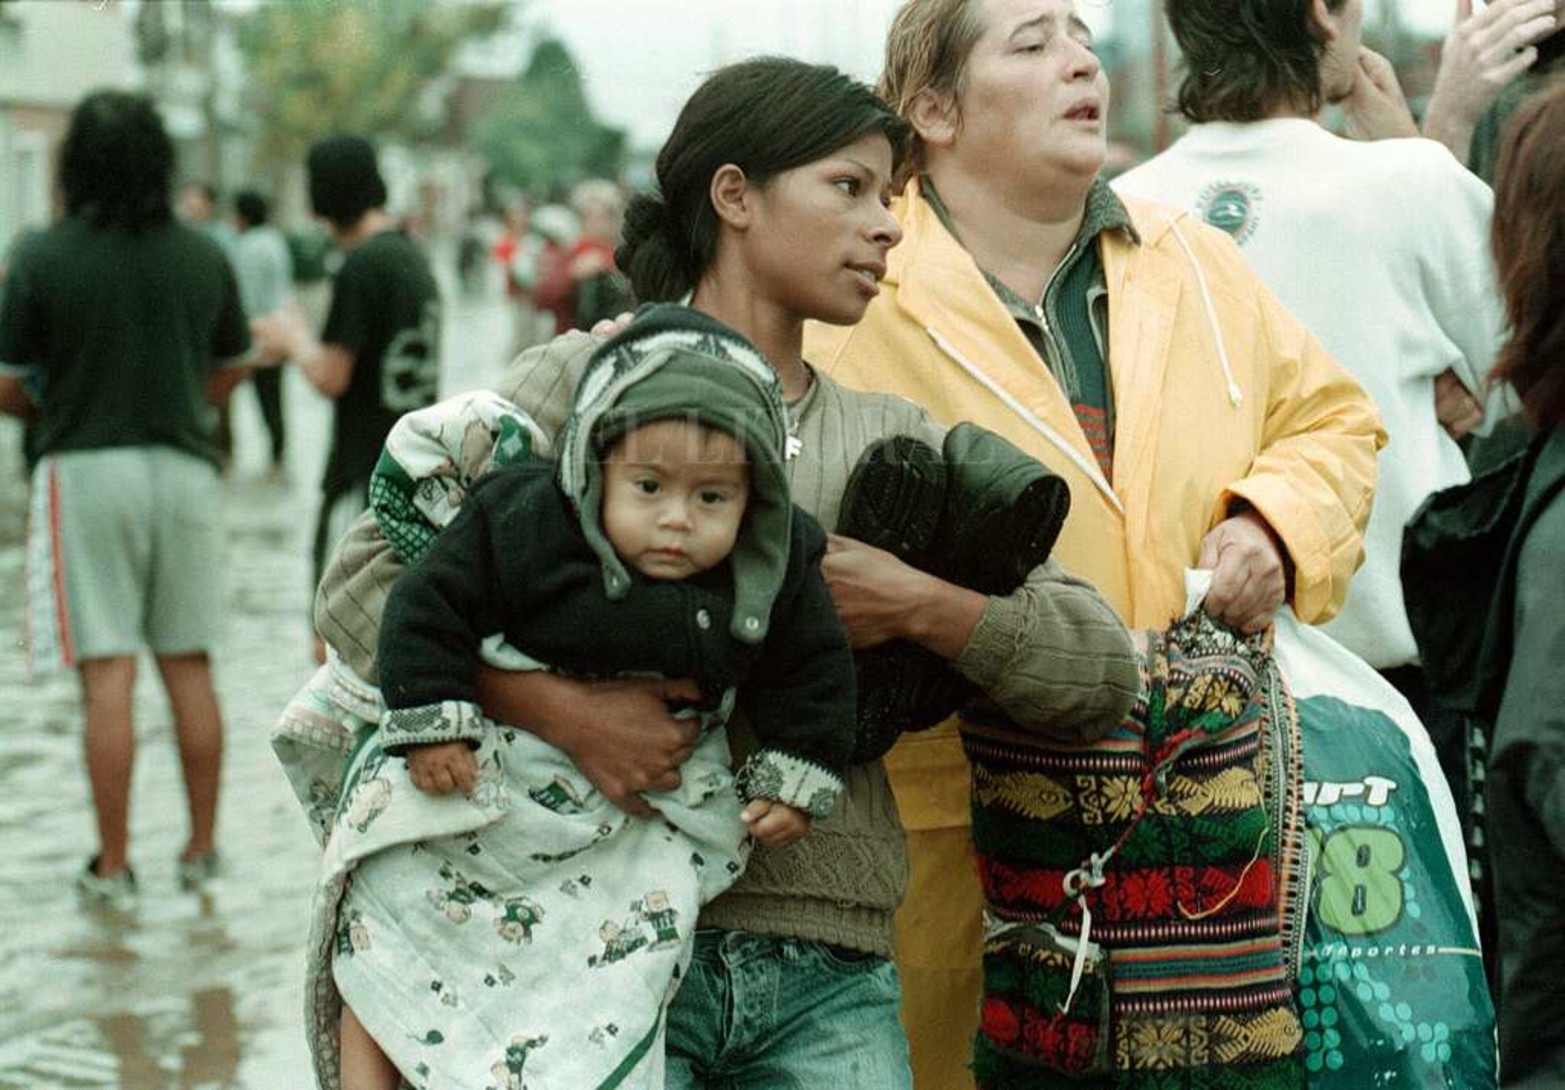 Las imágenes son dolorosas a 18 años de la catástrofe que azotó a la ciudad y que involucró a 130.000 santafesinos y snatafesinas.